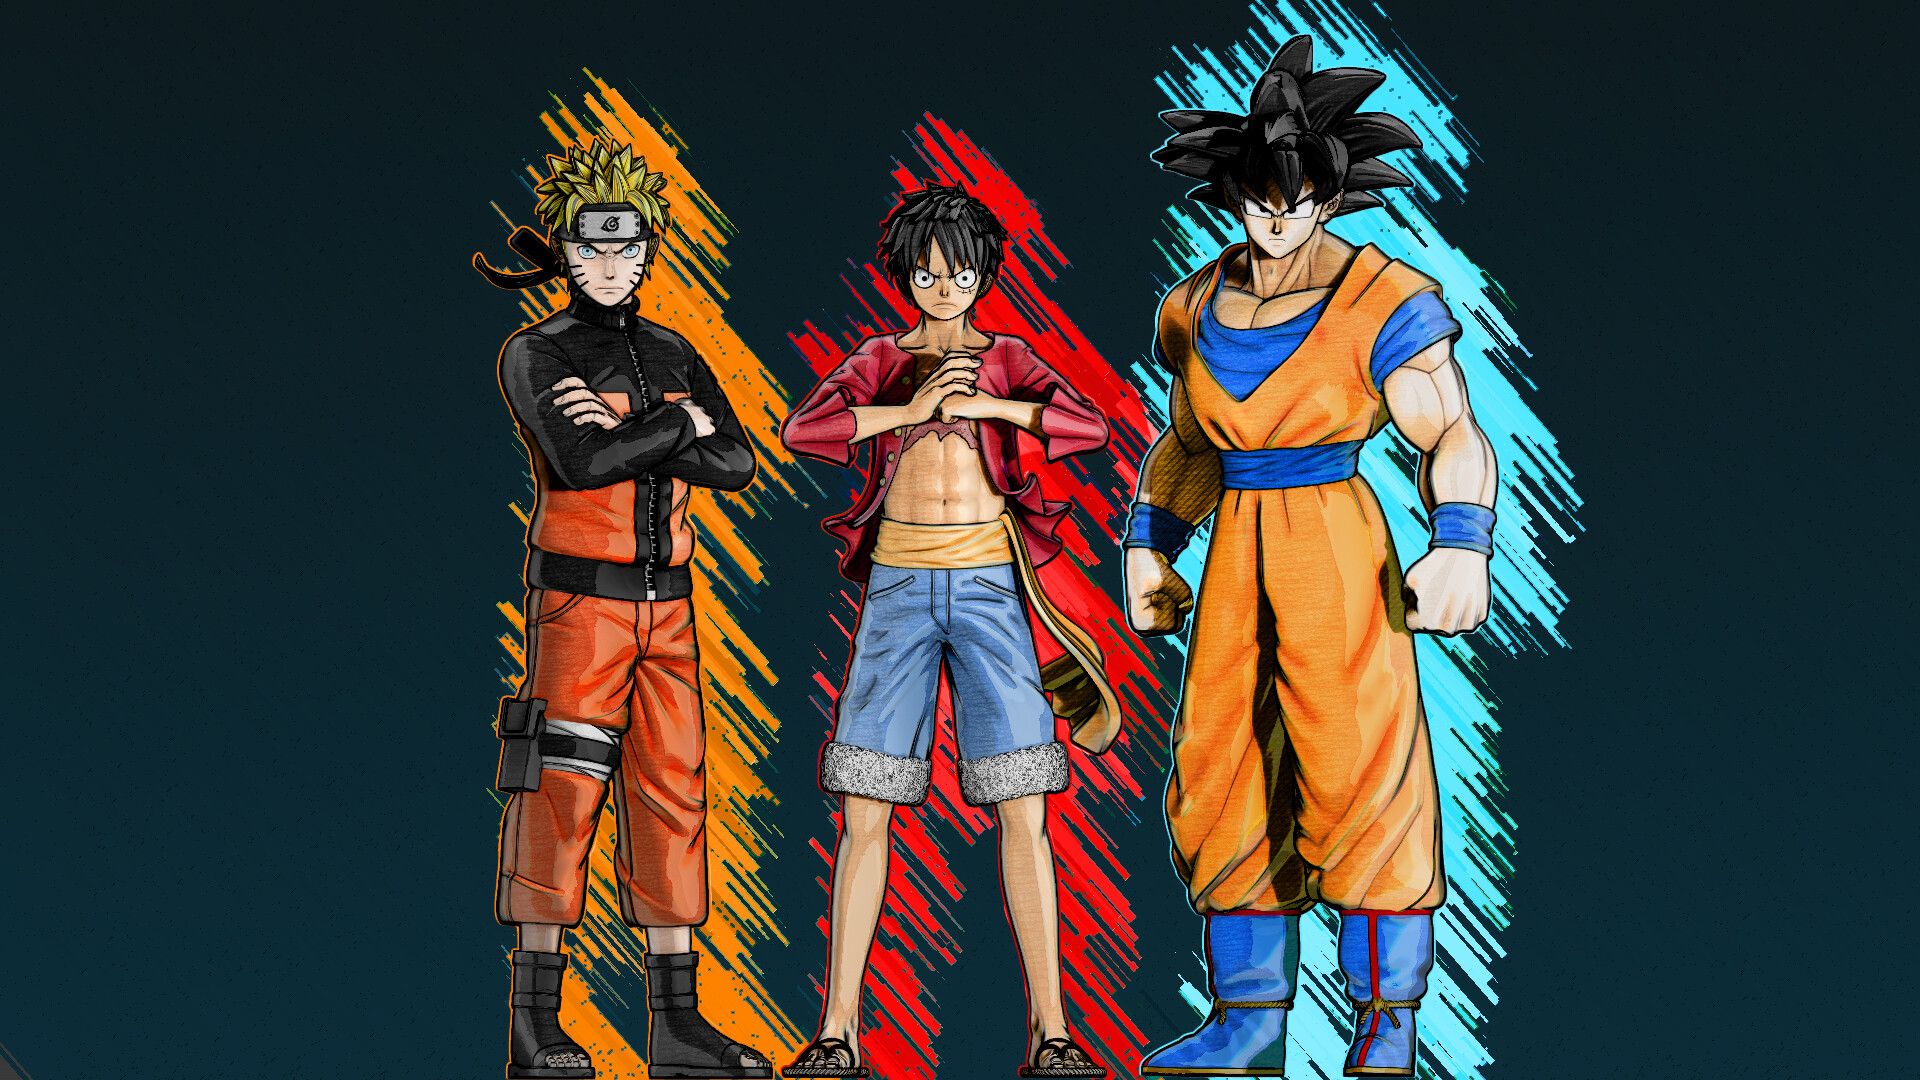 Bạn là một fan của Naruto, Luffy và Goku? Bạn đã bao giờ muốn có những hình nền đẹp về bộ ba siêu anh hùng này? Hãy đến với trang Wallpaper Cave và tìm những mẫu hình nền Naruto Luffy Goku đầy đủ, đẹp mắt và chất lượng nhất.